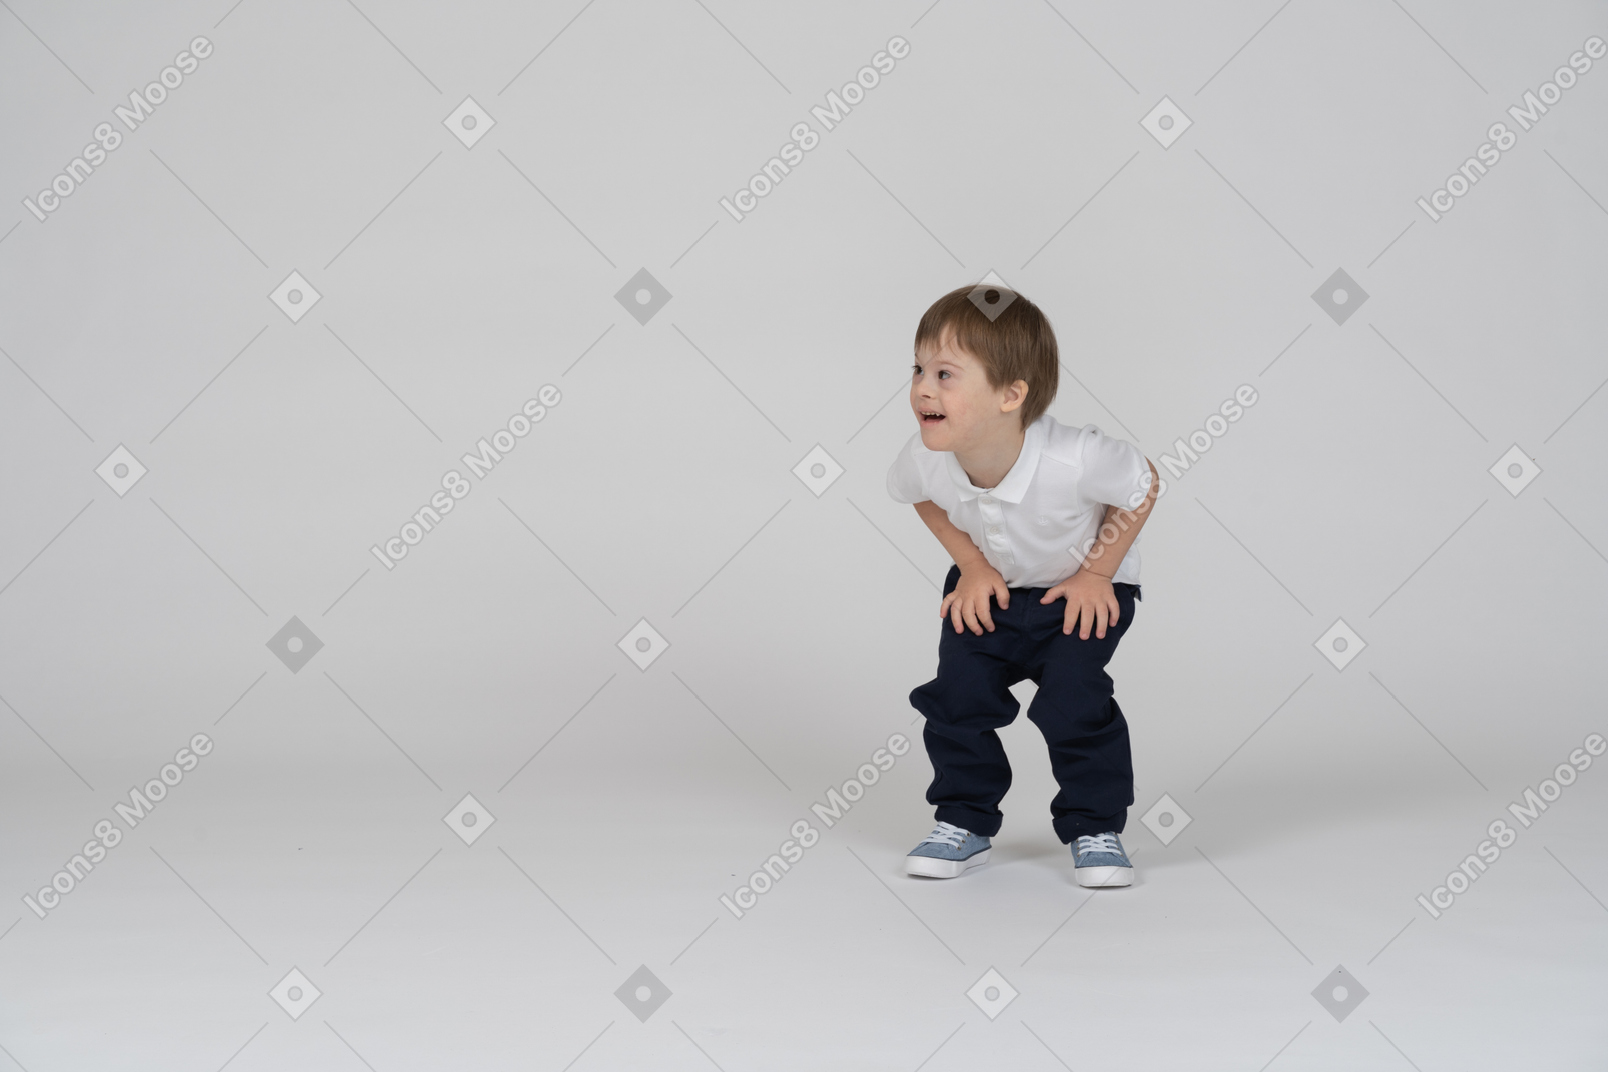 Vue de face d'un garçon accroupi et posant ses mains sur ses genoux